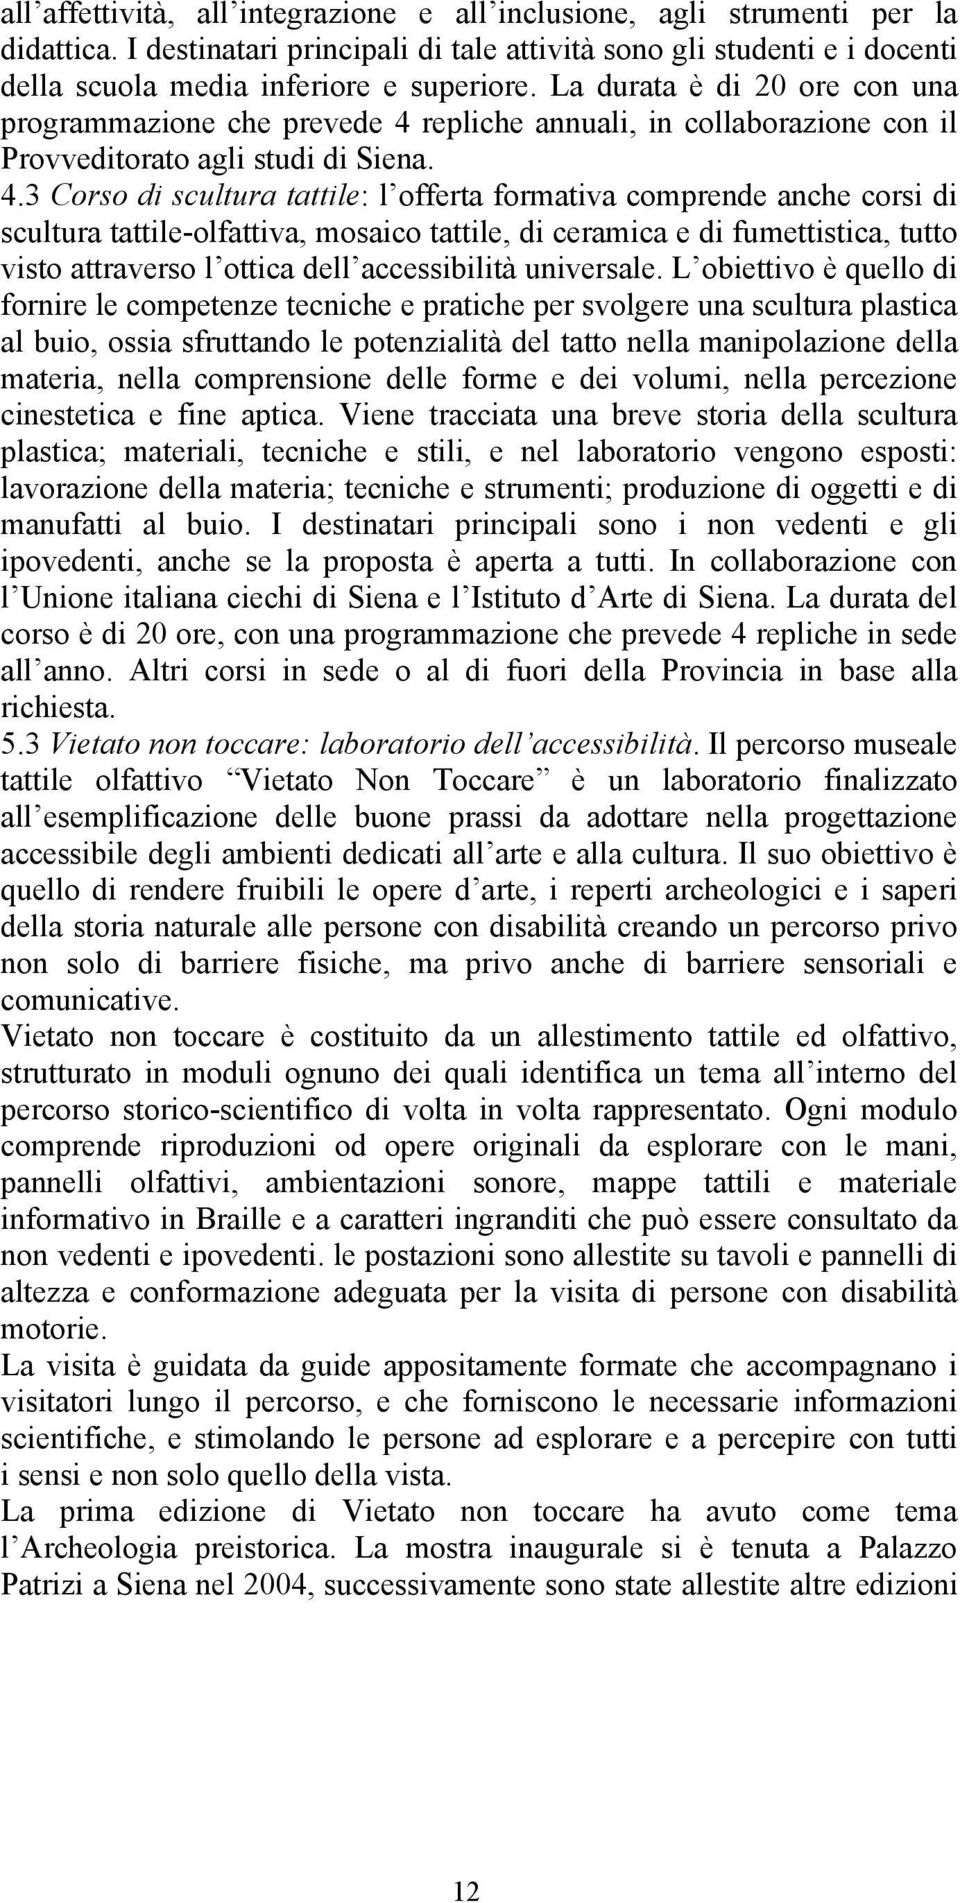 repliche annuali, in collaborazione con il Provveditorato agli studi di Siena. 4.